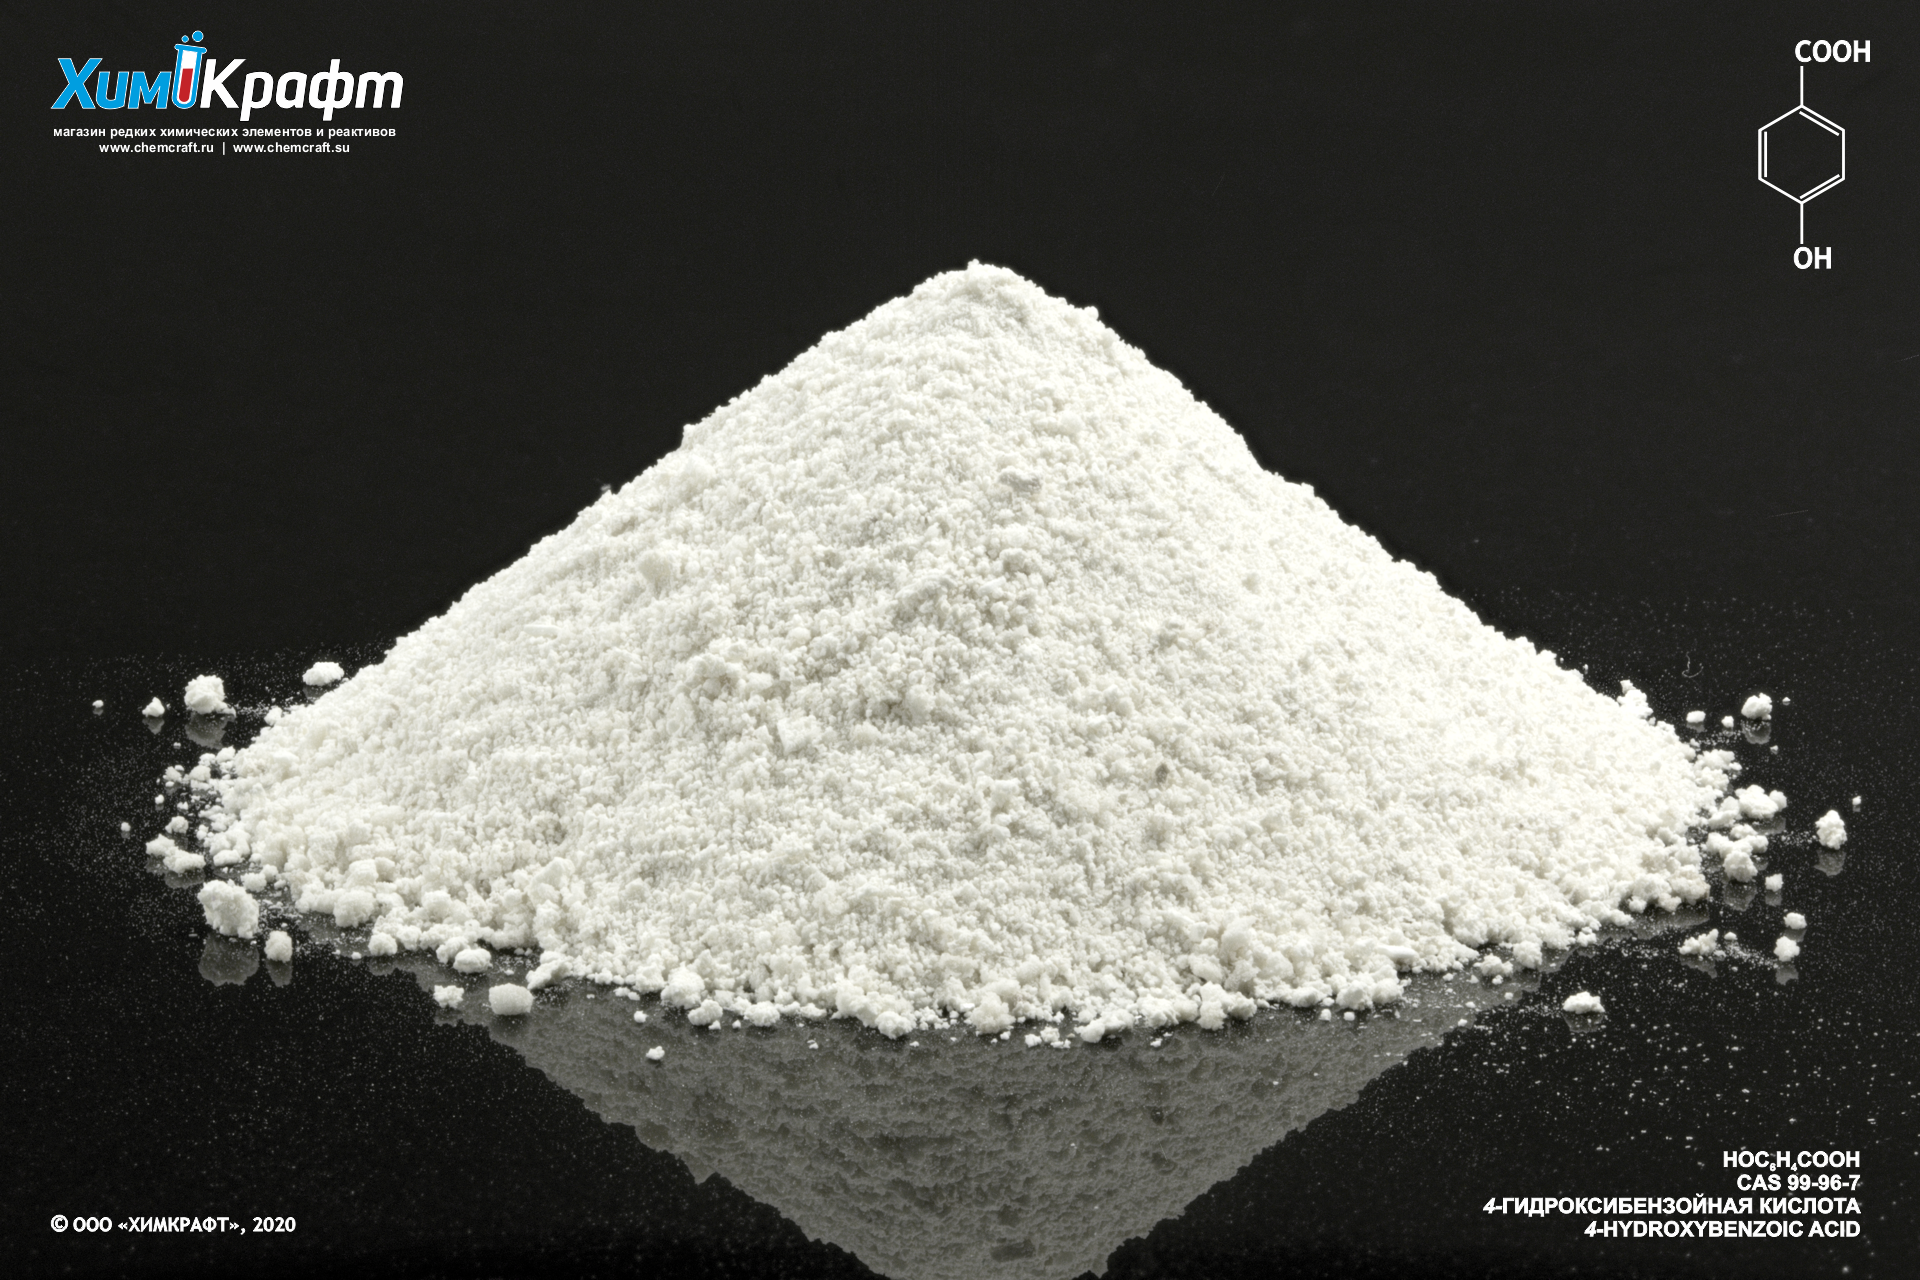 Пара-гидроксибензойной кислоты метилового эфира натриевая соль